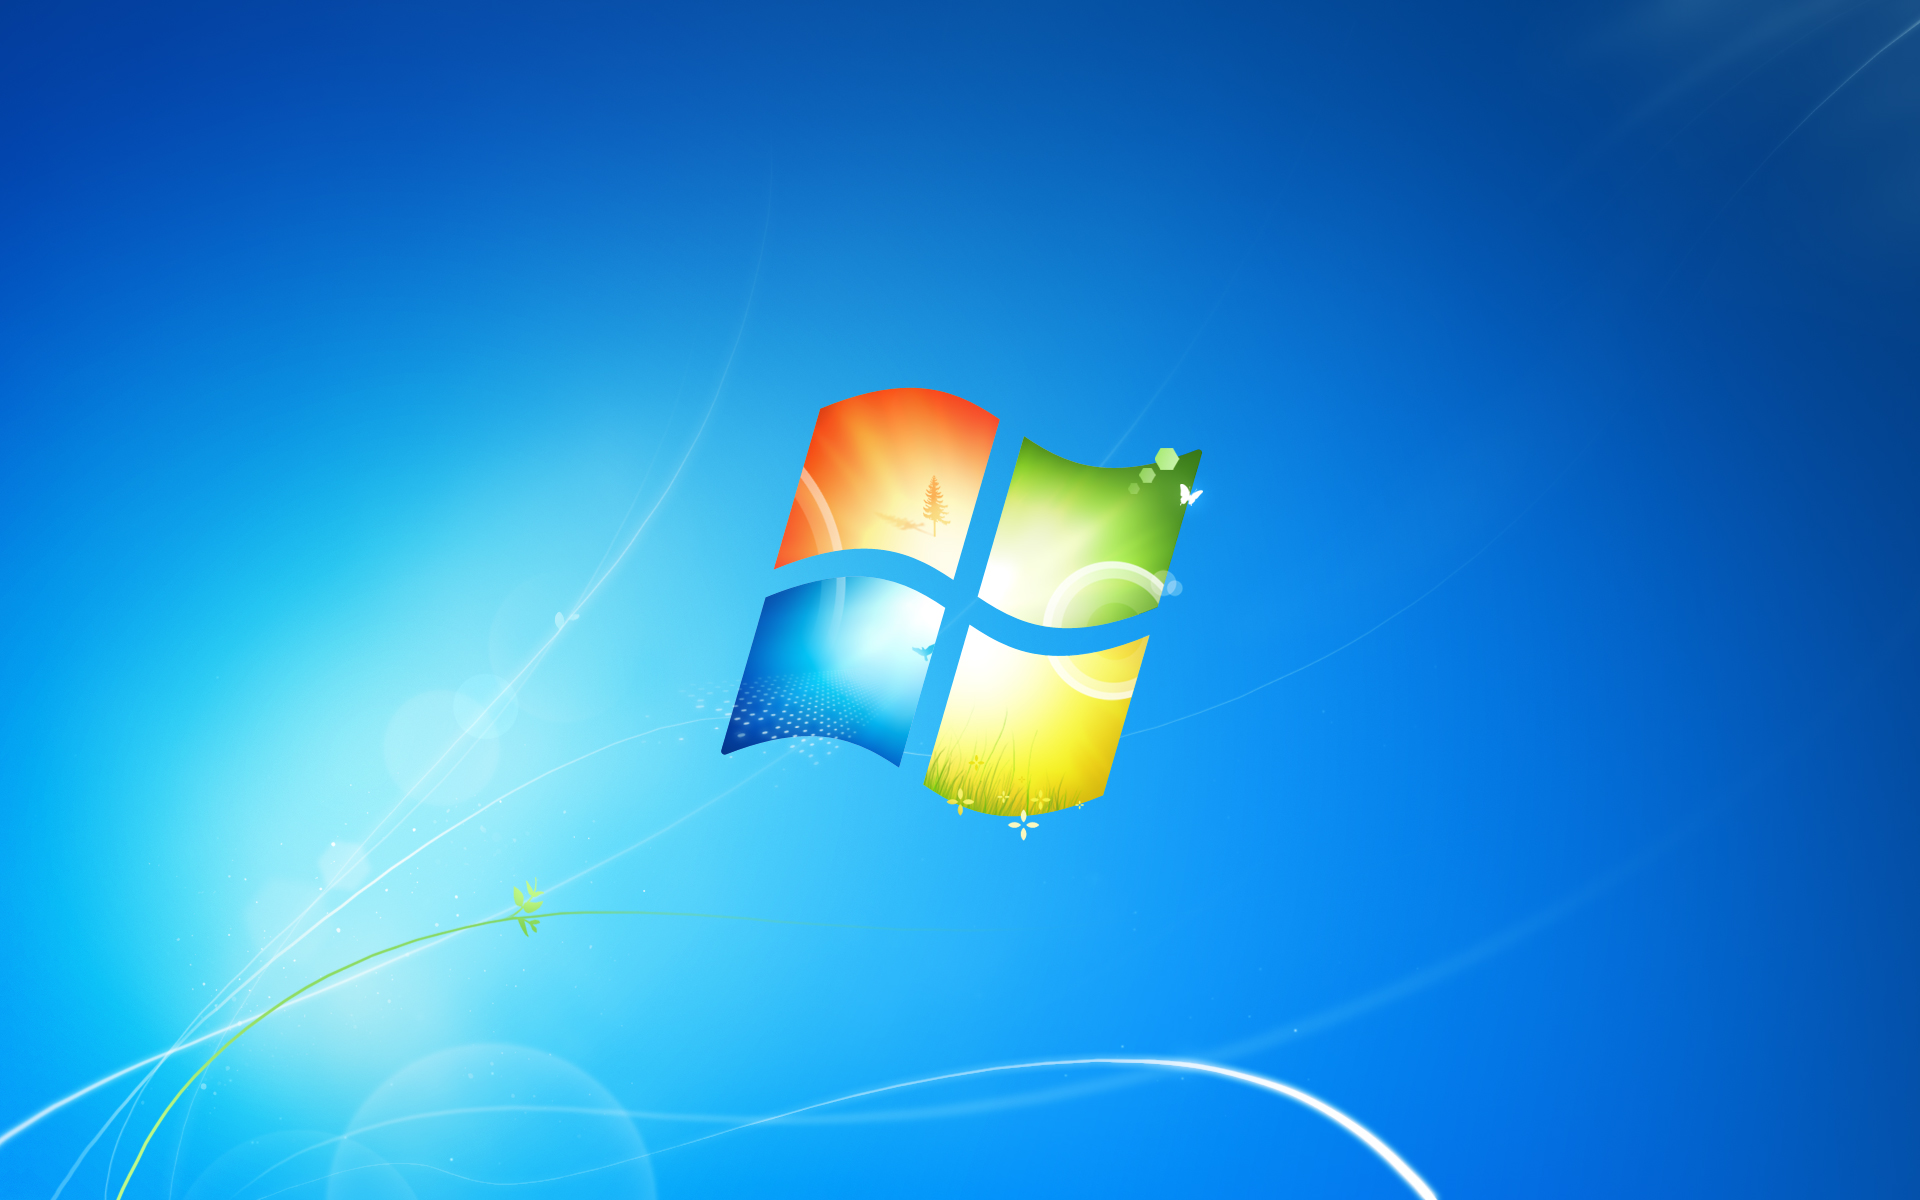 Windows 7 papel de parede versão completa.